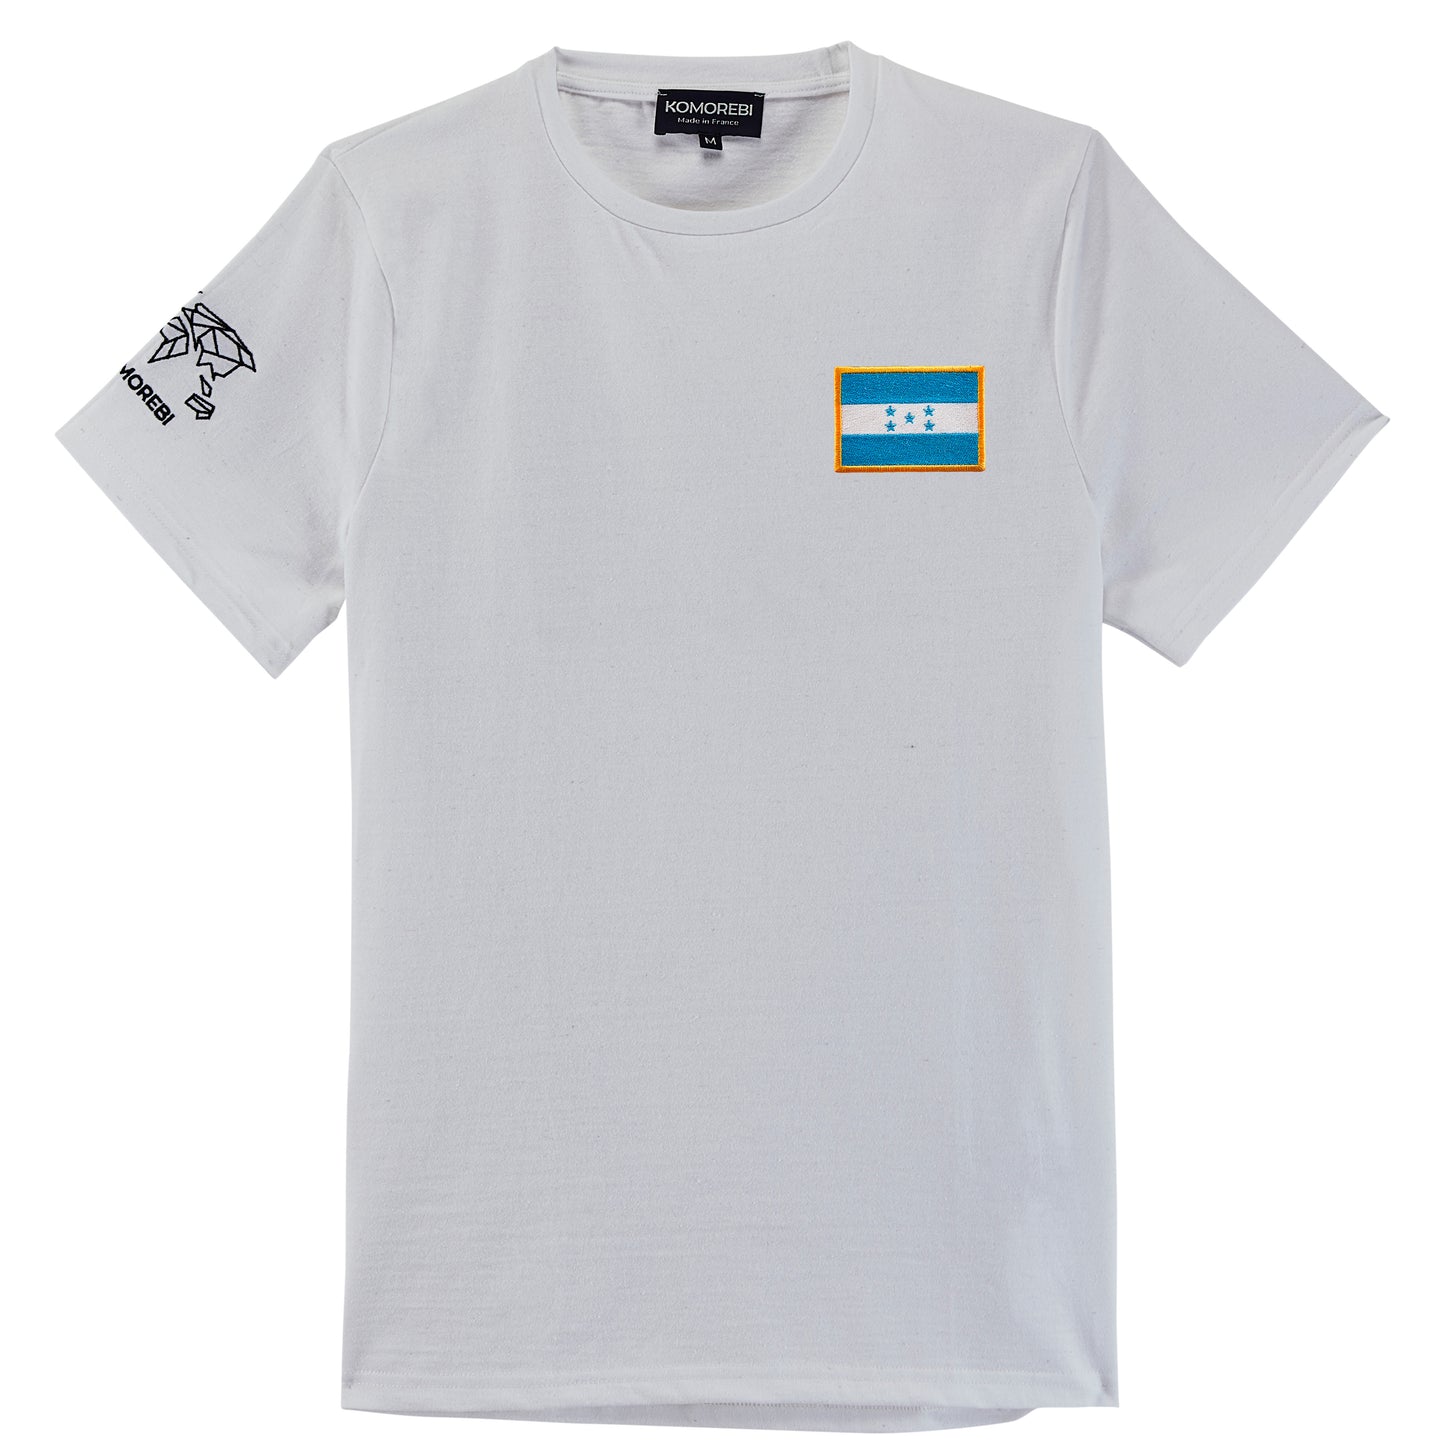 Honduras - flag t-shirt